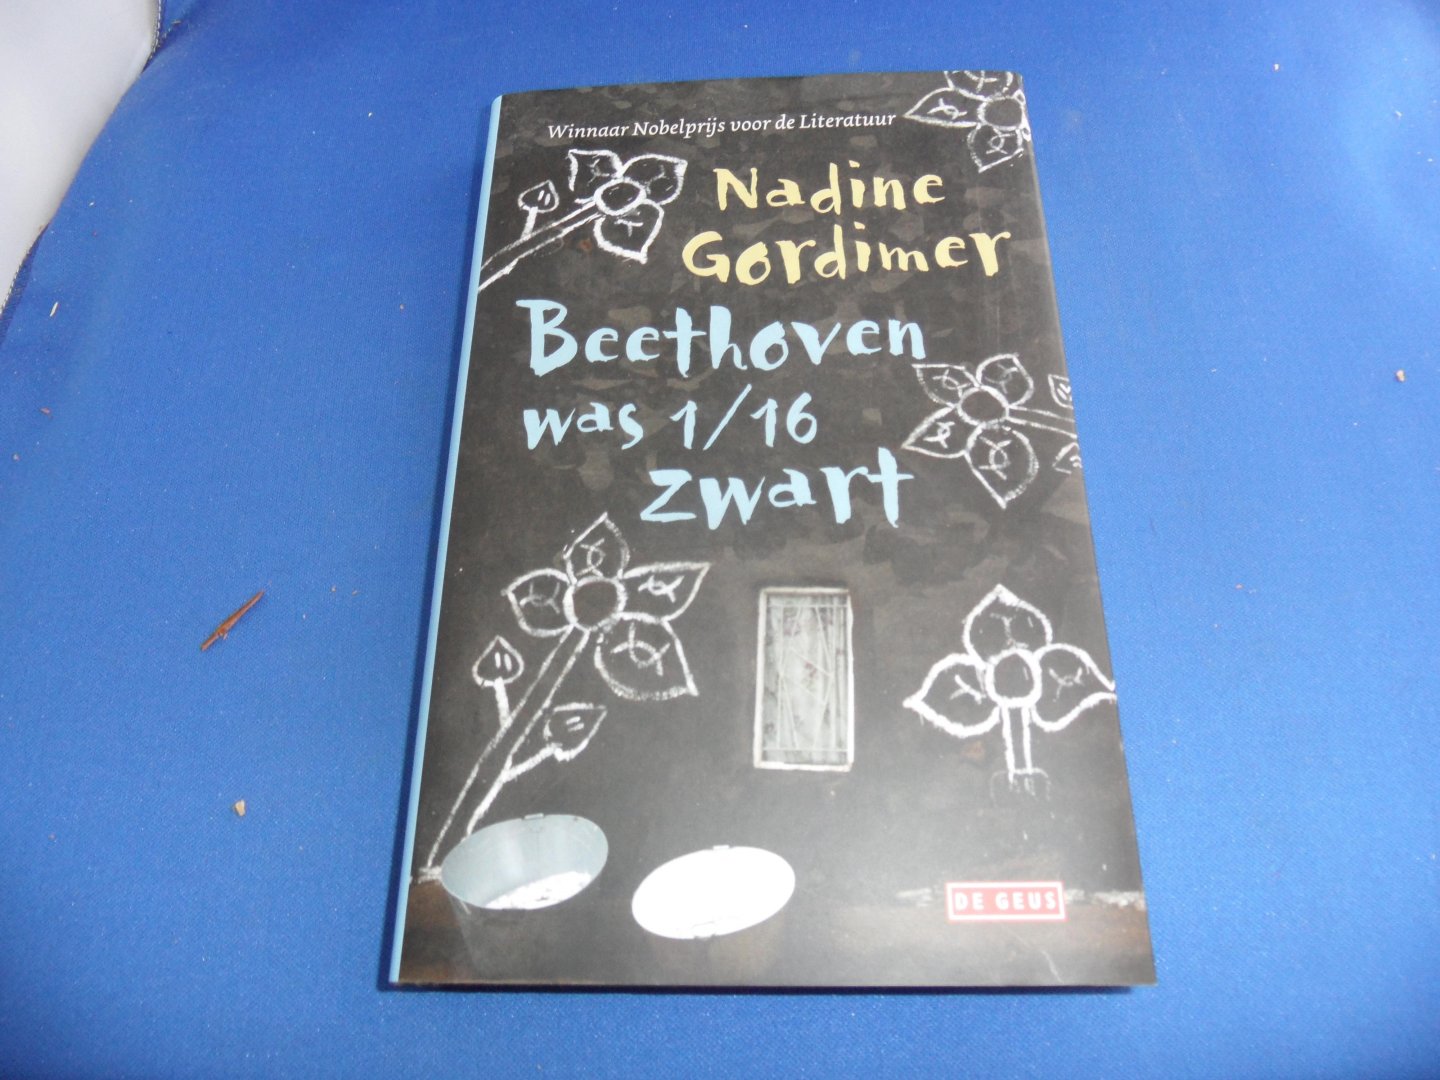 Gordimer, Nadine - Beethoven was 1/16 zwart